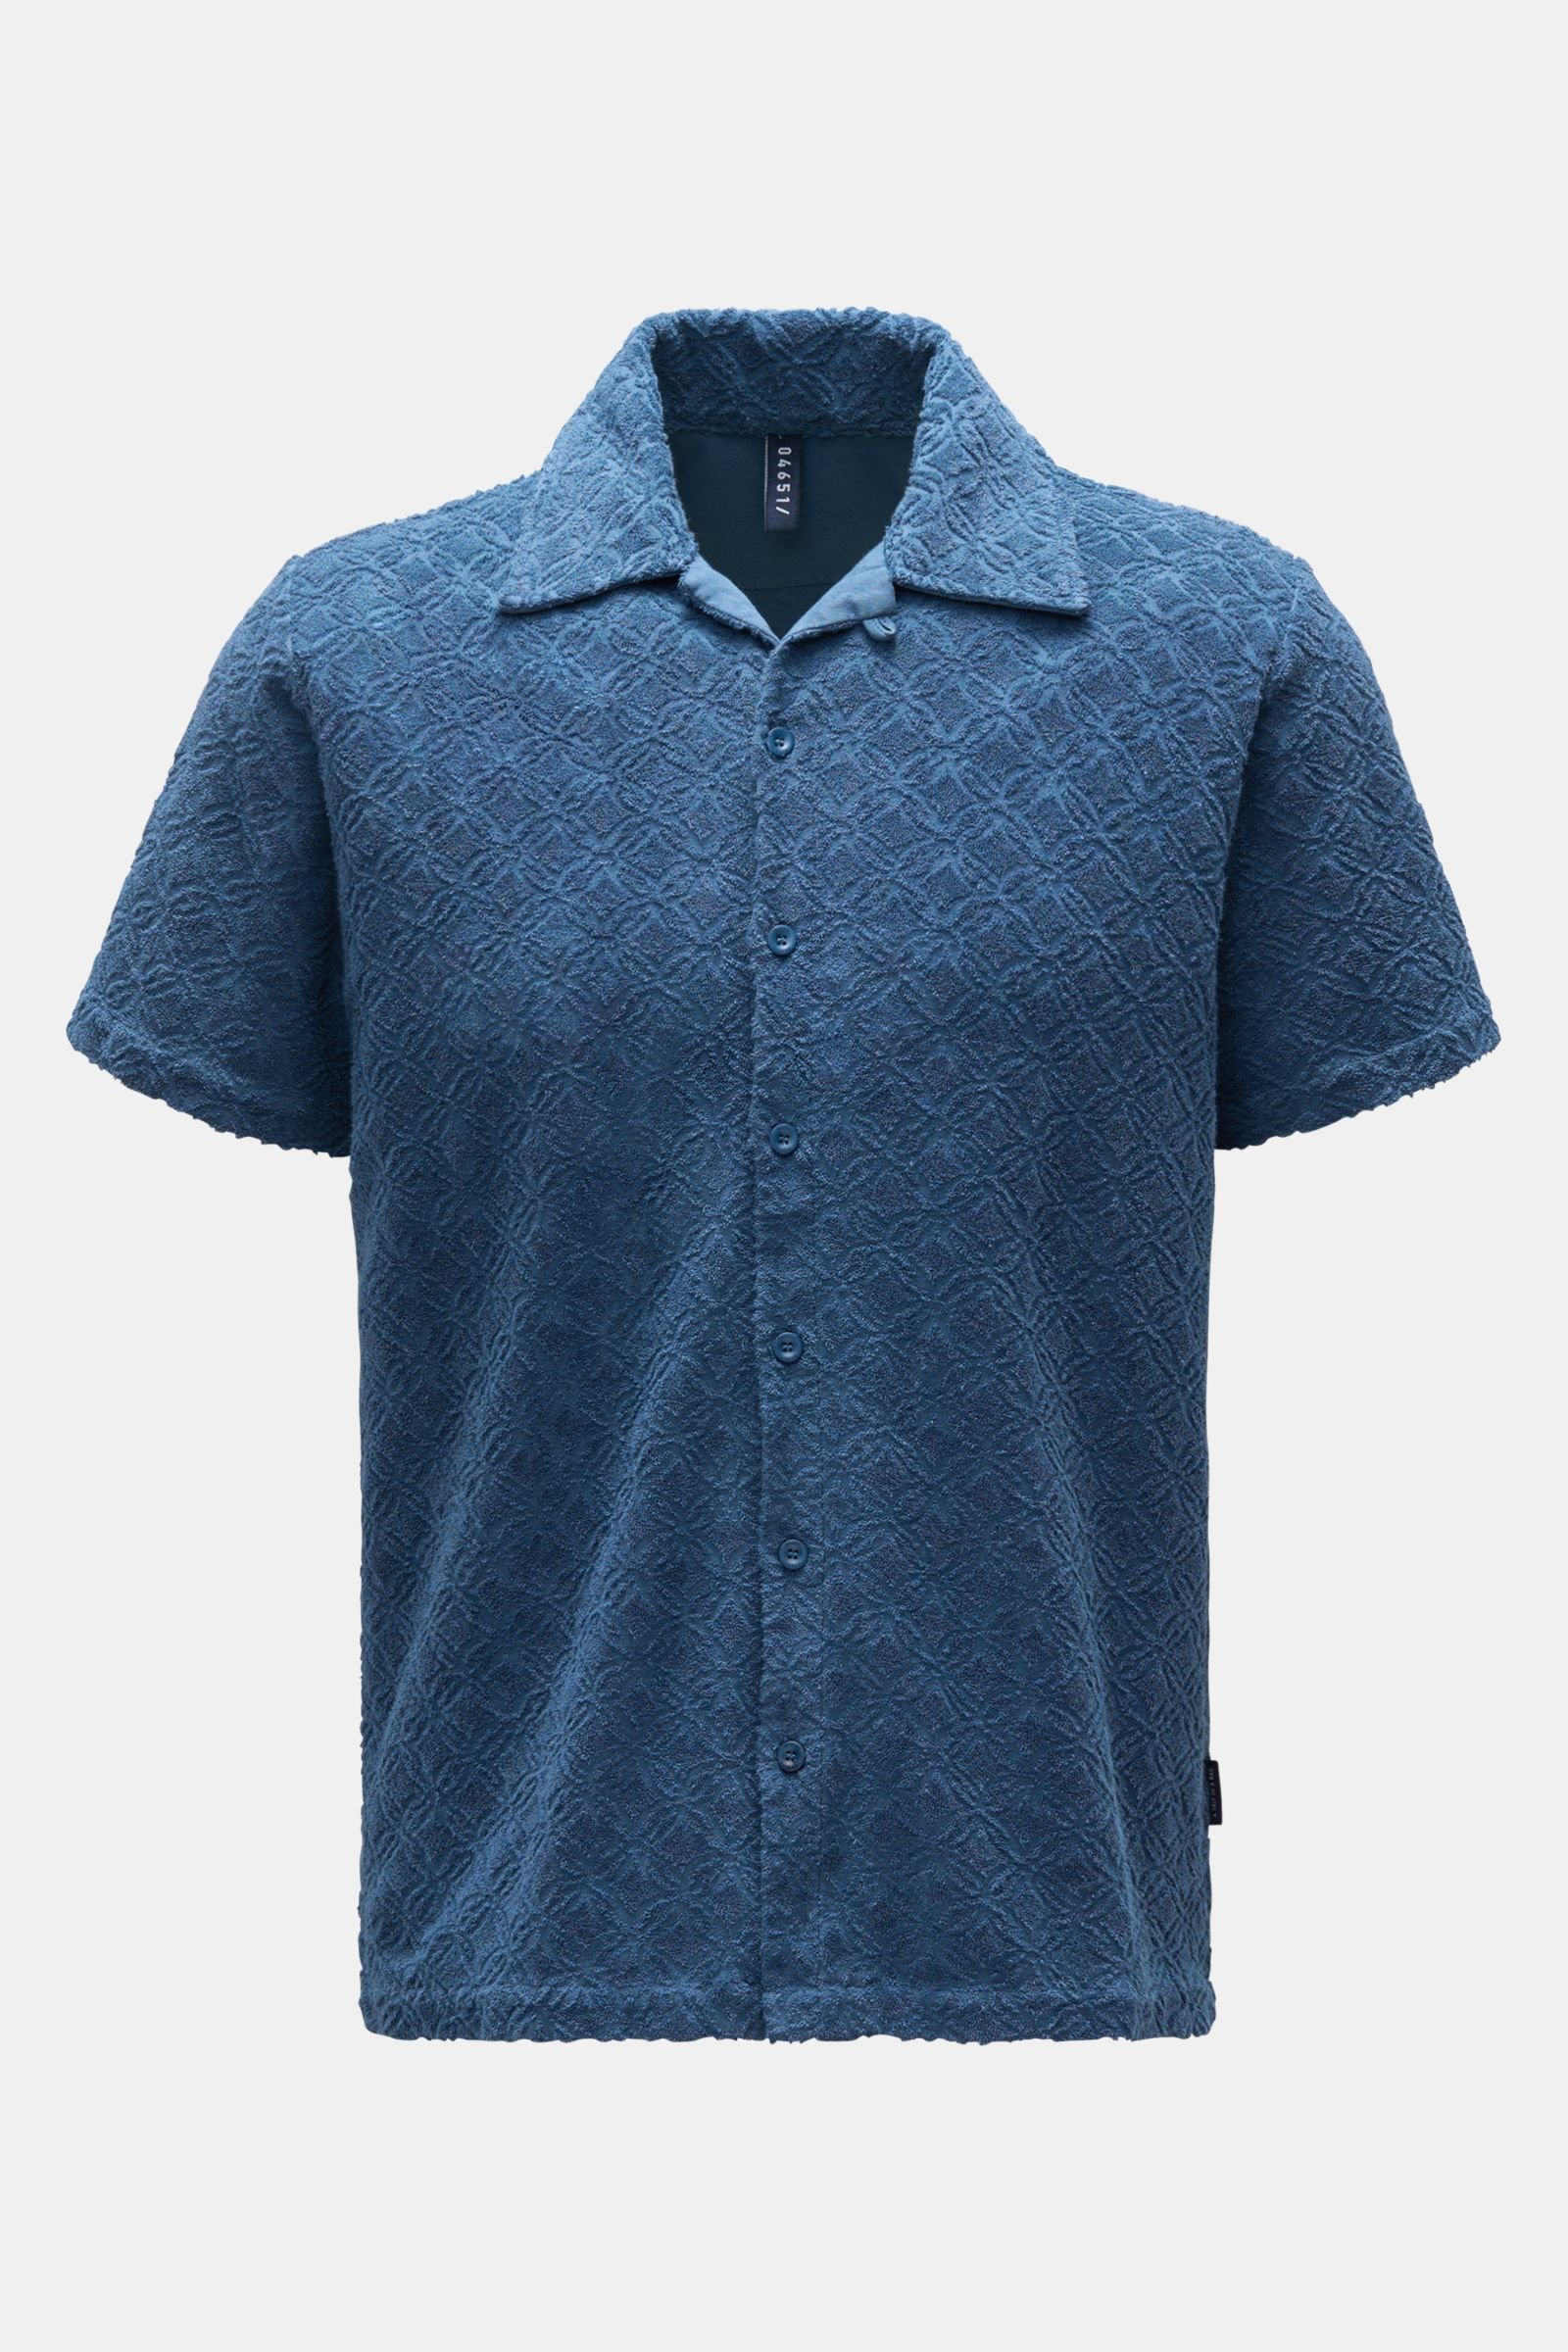 Terry short sleeve shirt 'Terry Shirt' Kent collar dark blue patterned